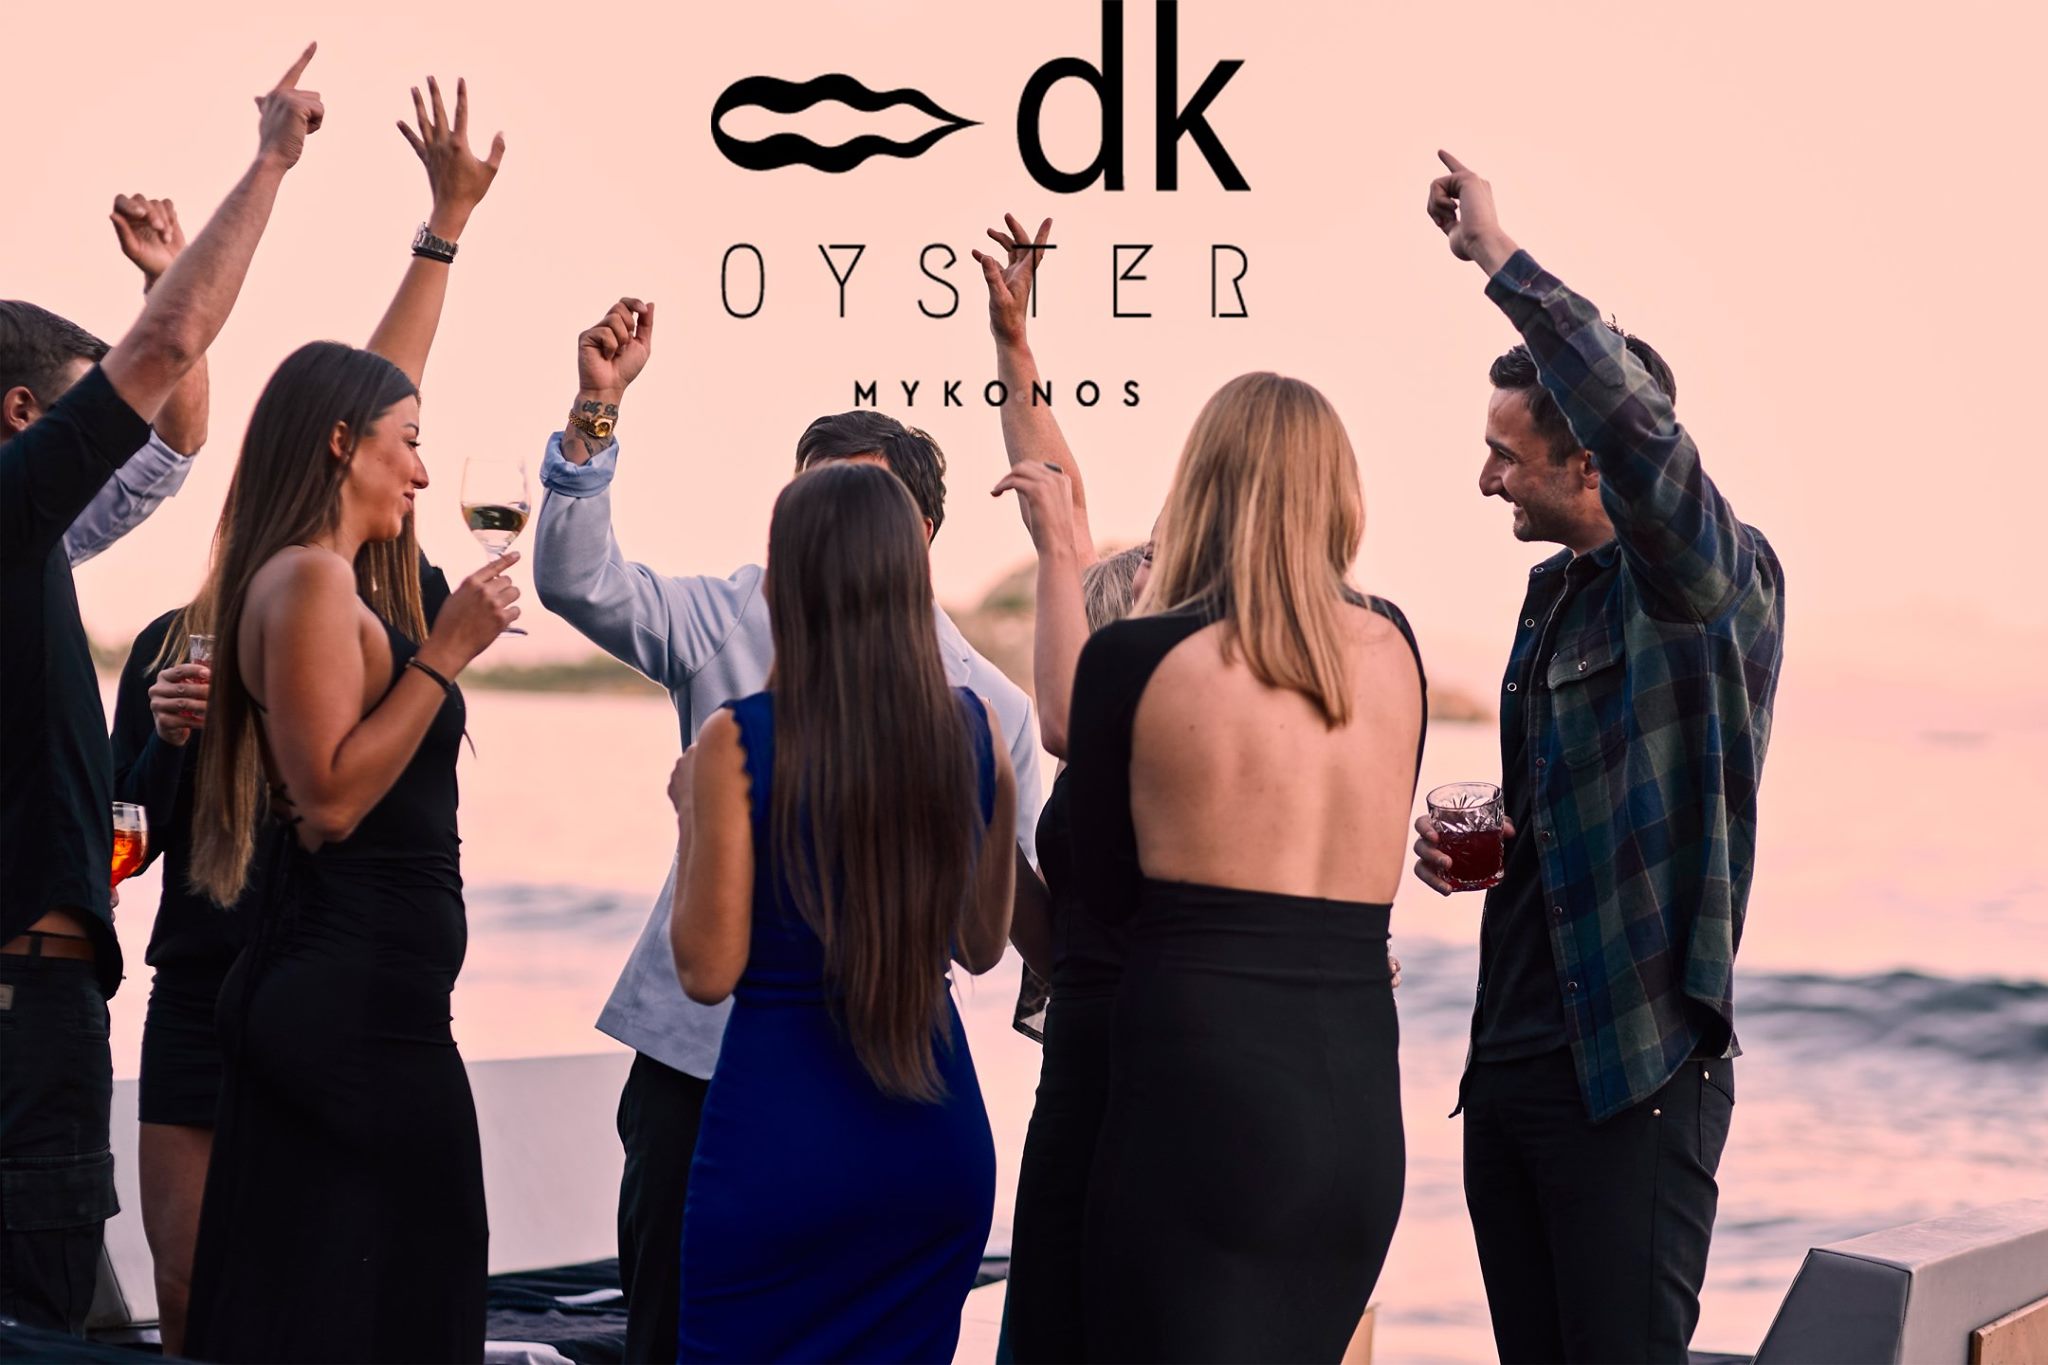 Dk oyster mykonos – Trip Advisor: O ιδιοκτήτης του εστιατορίου περνά στην αντεπίθεση